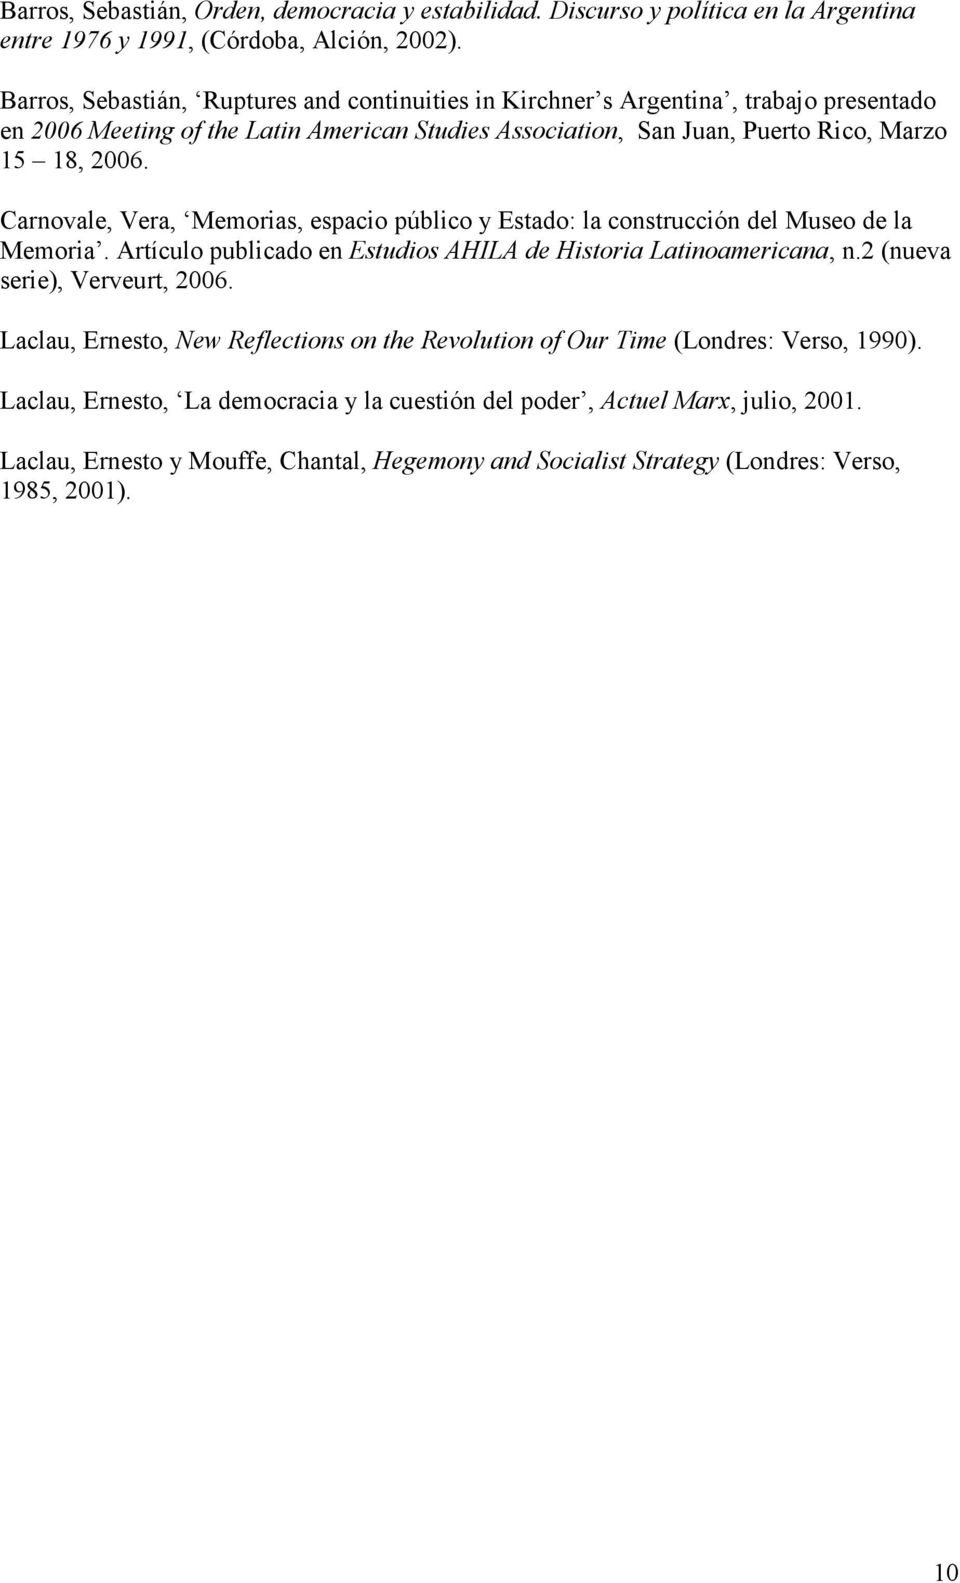 Carnovale, Vera, Memorias, espacio público y Estado: la construcción del Museo de la Memoria. Artículo publicado en Estudios AHILA de Historia Latinoamericana, n.2 (nueva serie), Verveurt, 2006.